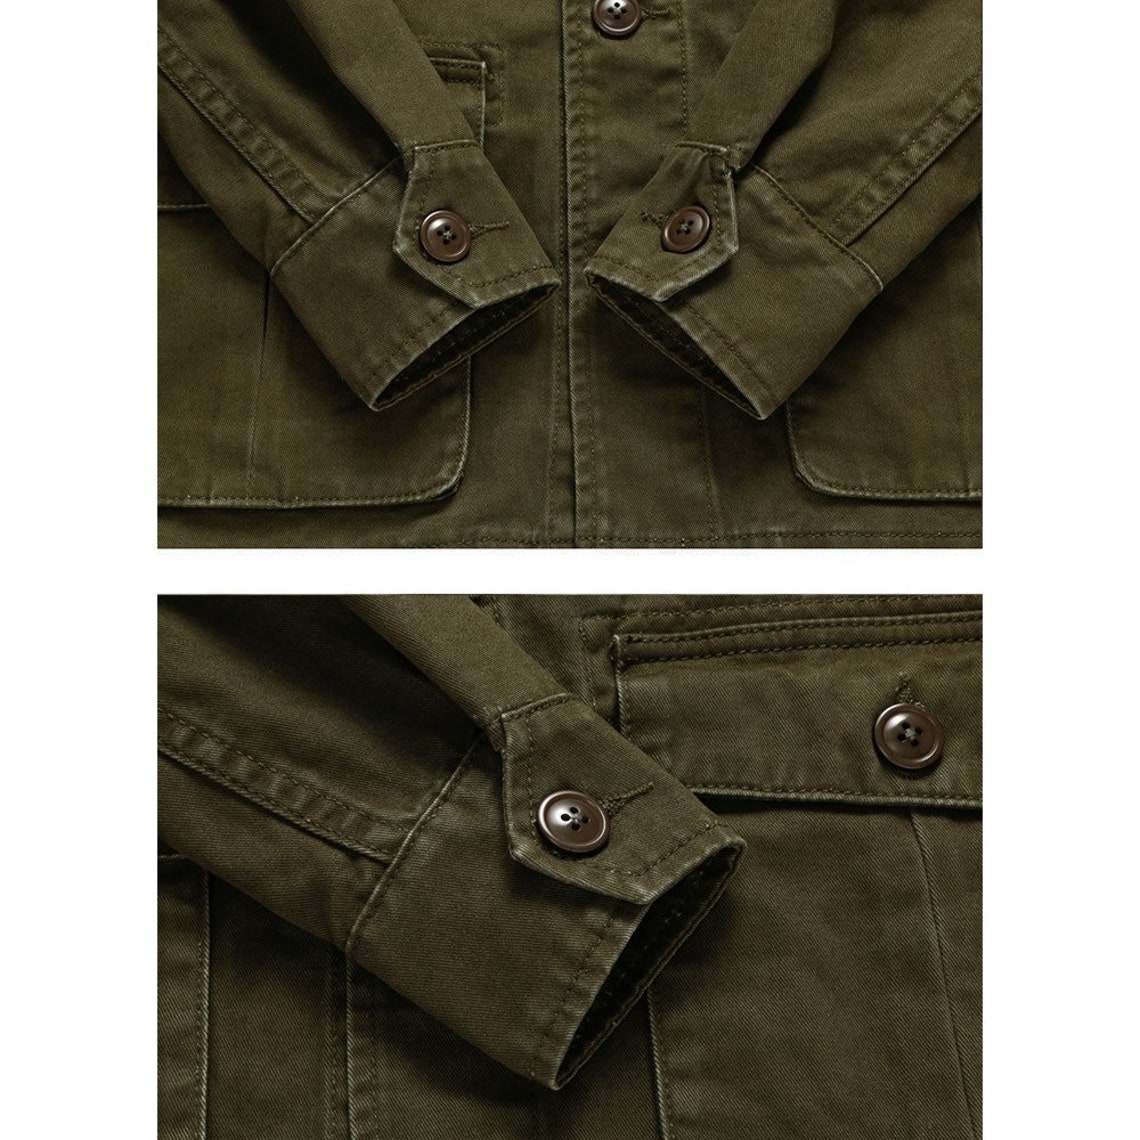 Amekaji Vintage M43 Field Jacket Men Army Green Lapel - Etsy